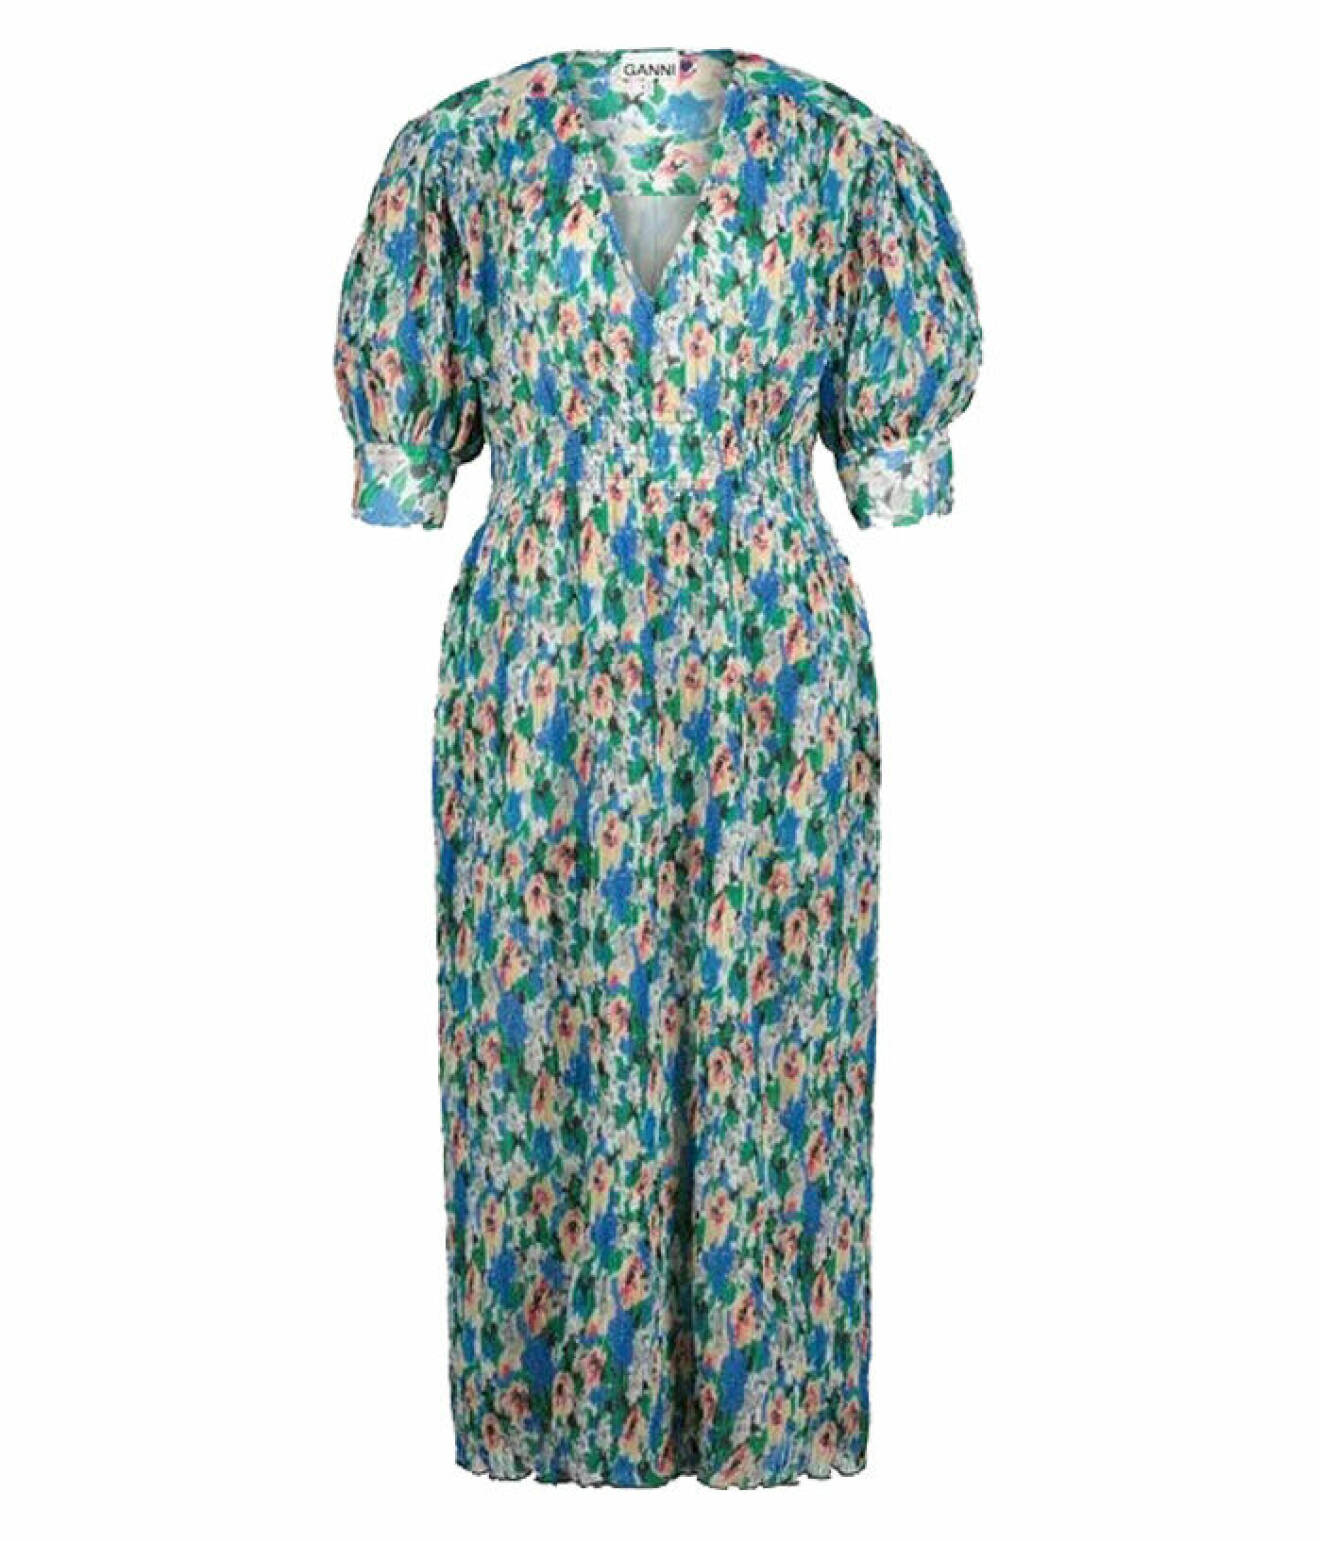 sommarkläder 2022 – blå blommig klänning från Ganni